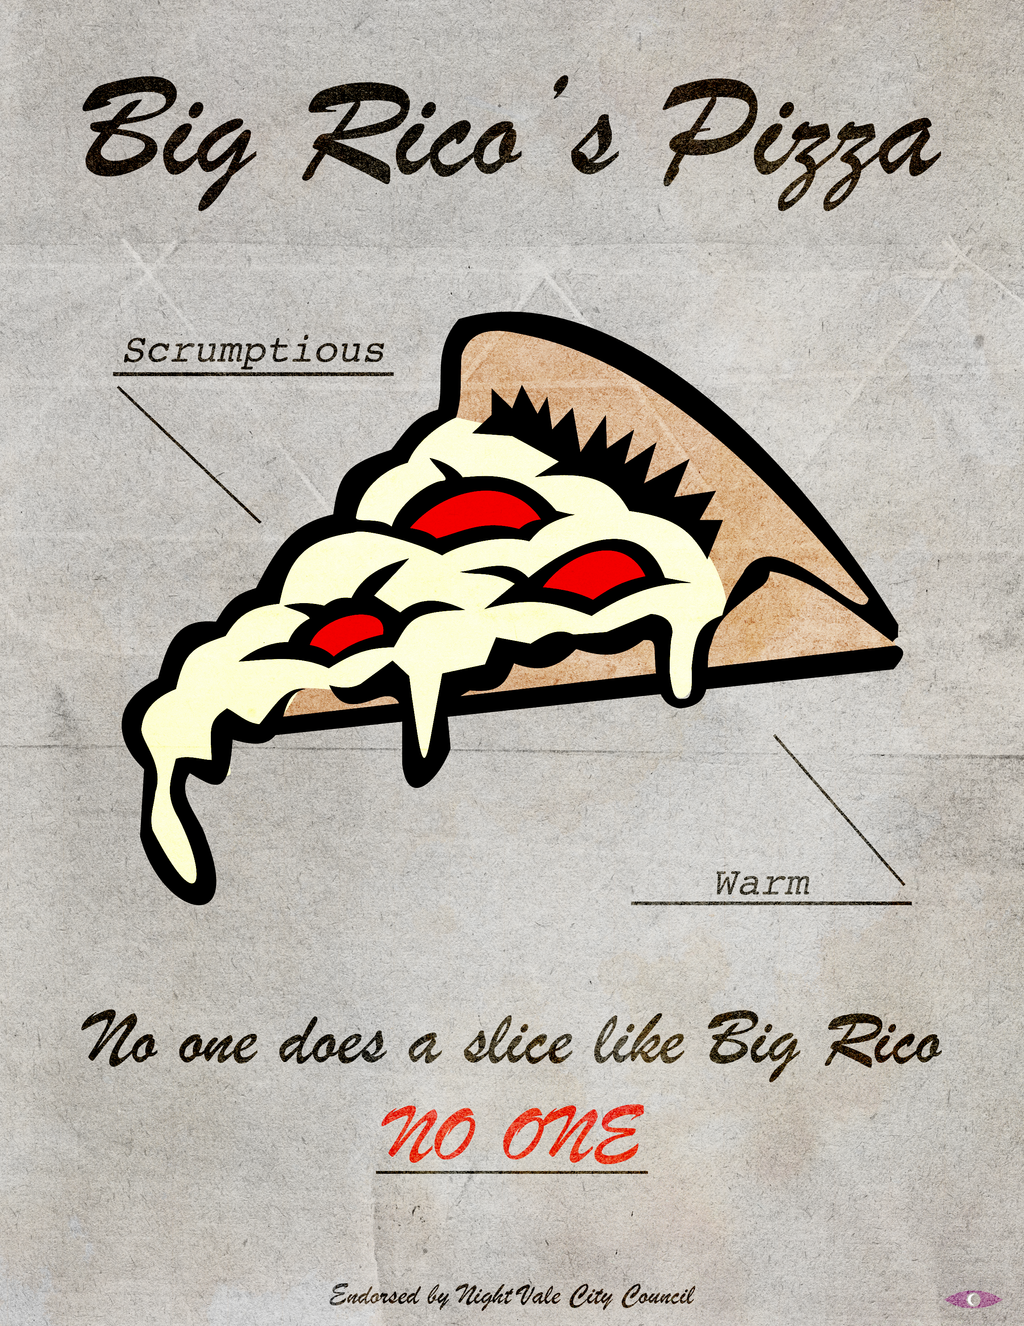 No one does a slice like Big Rico